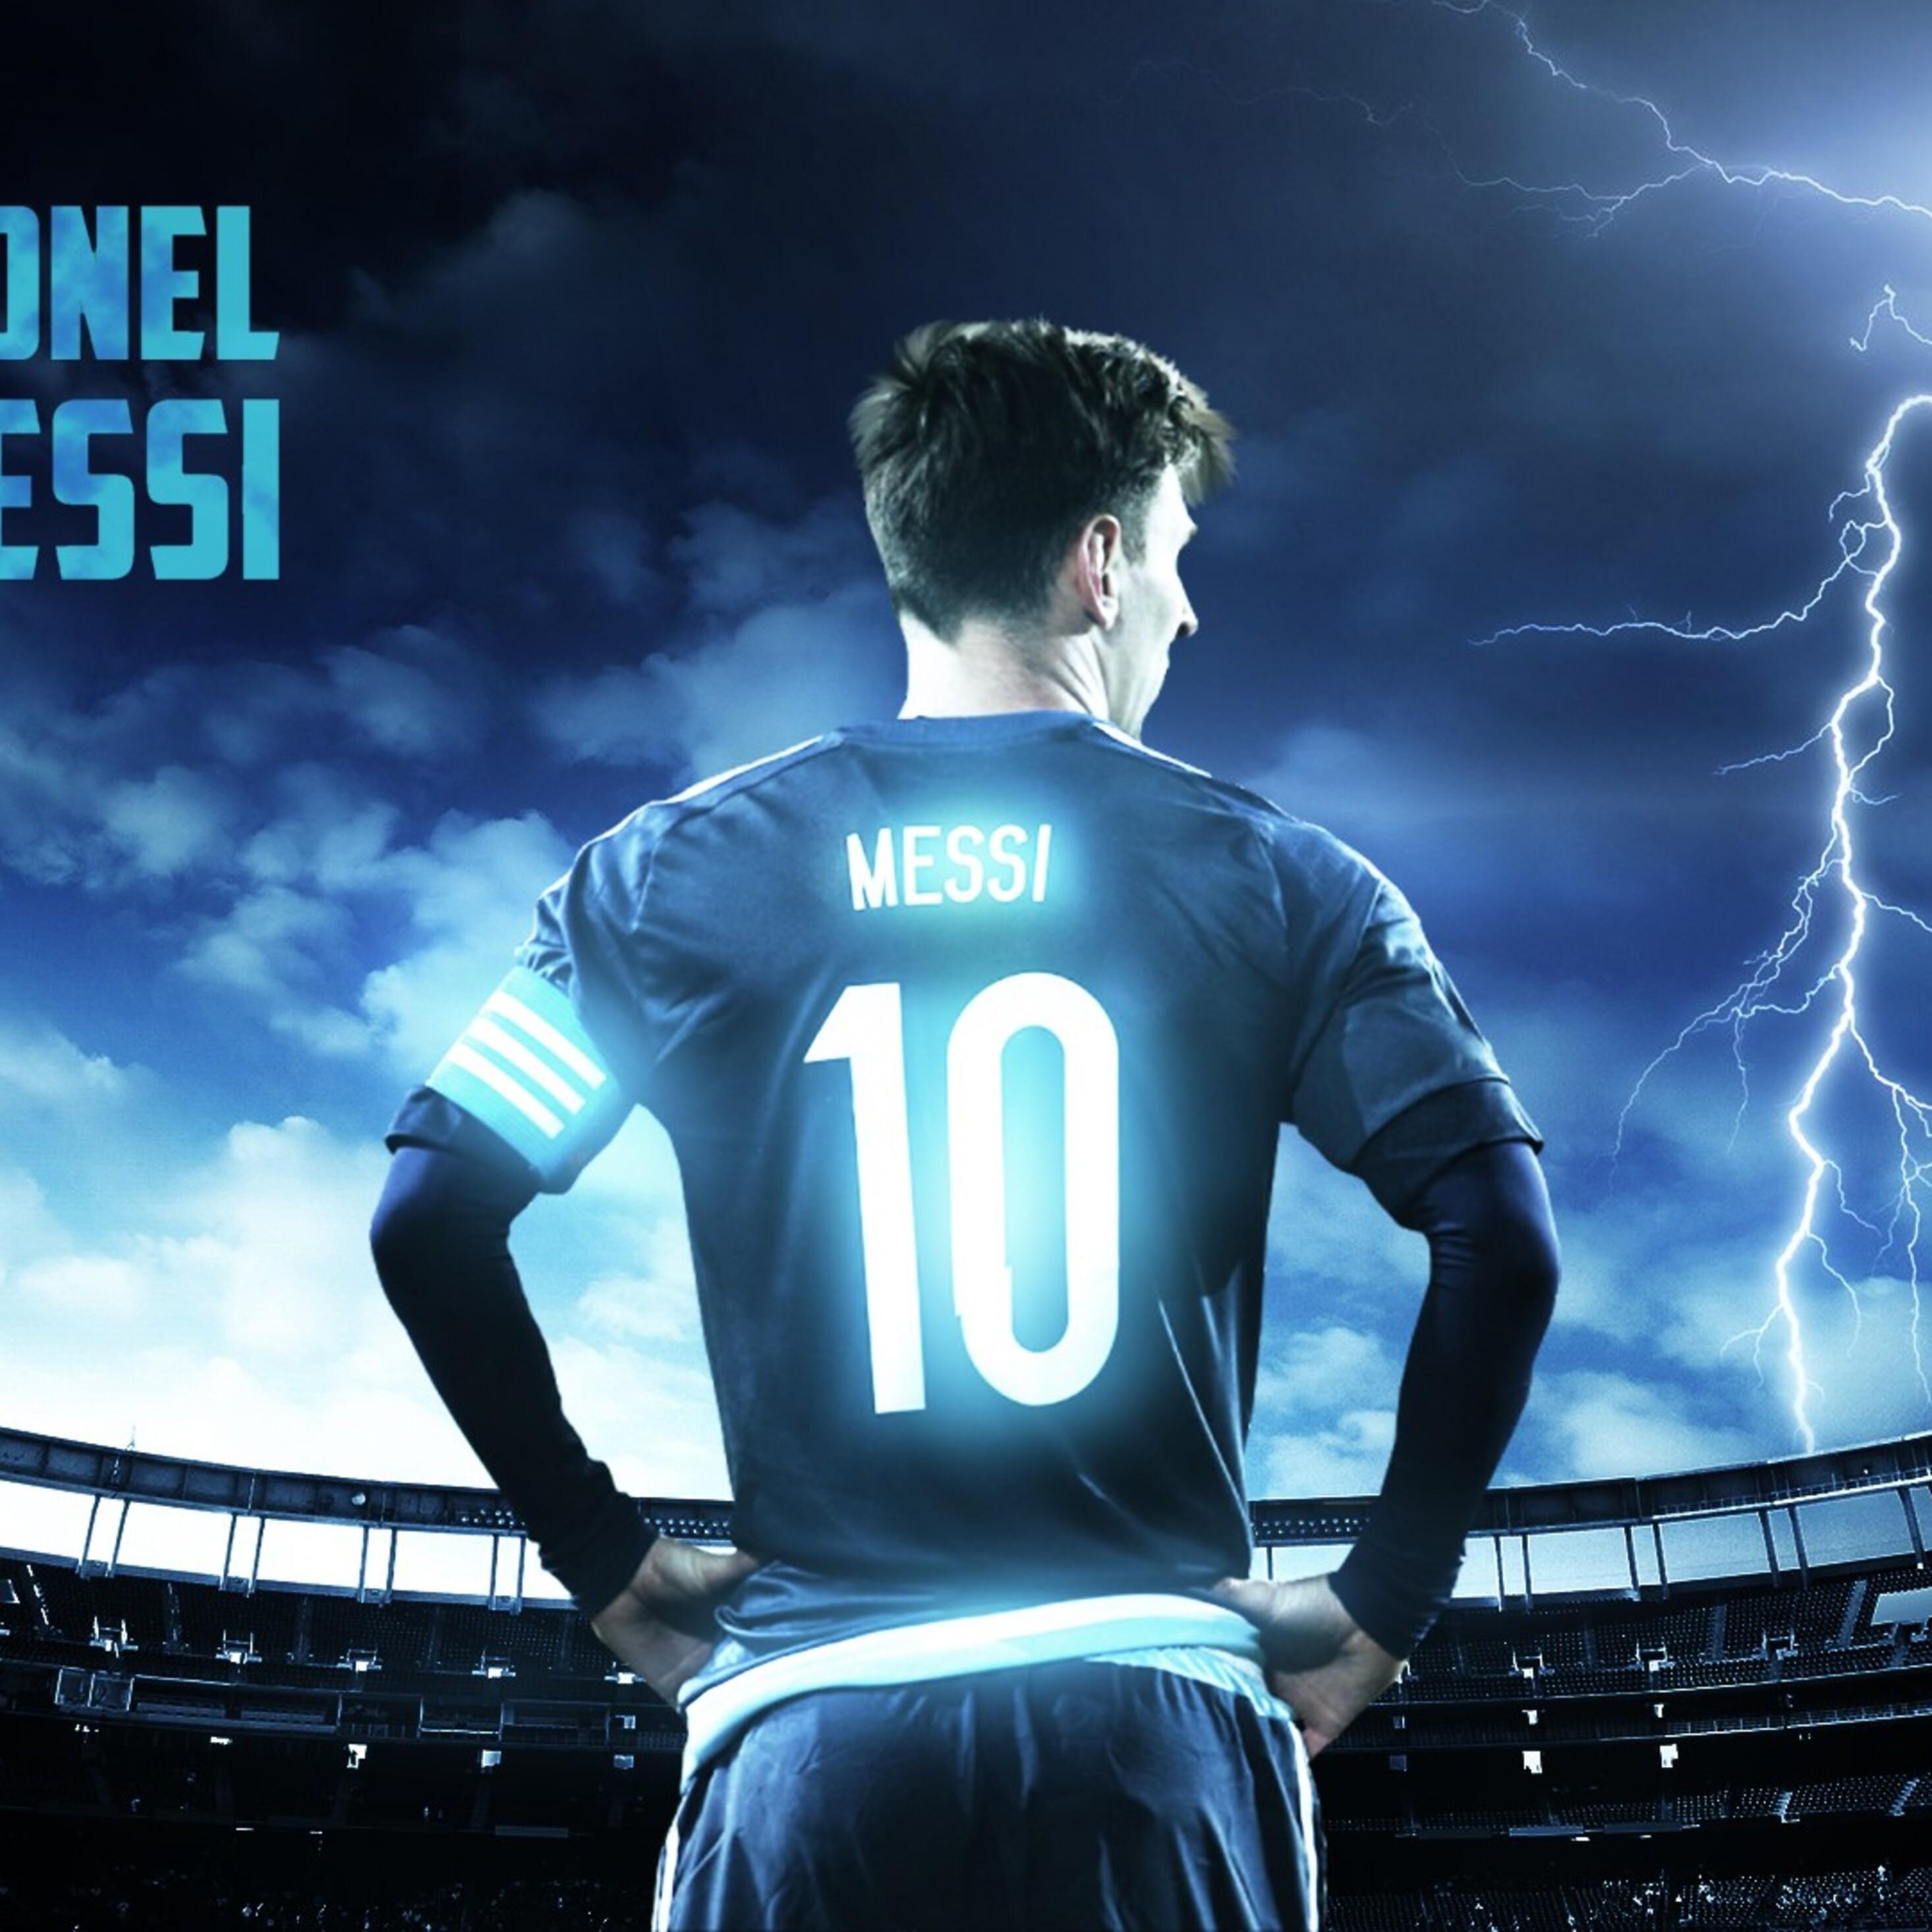 Cùng tải những hình nền iPad của Messi với độ phân giải cao và chất lượng hình ảnh tuyệt vời. Mỗi bức hình đều lấy cảm hứng từ sự nghiệp vĩ đại của Messi trên sân cỏ, chắc chắn sẽ làm bạn hài lòng và cảm thấy mãn nhãn.